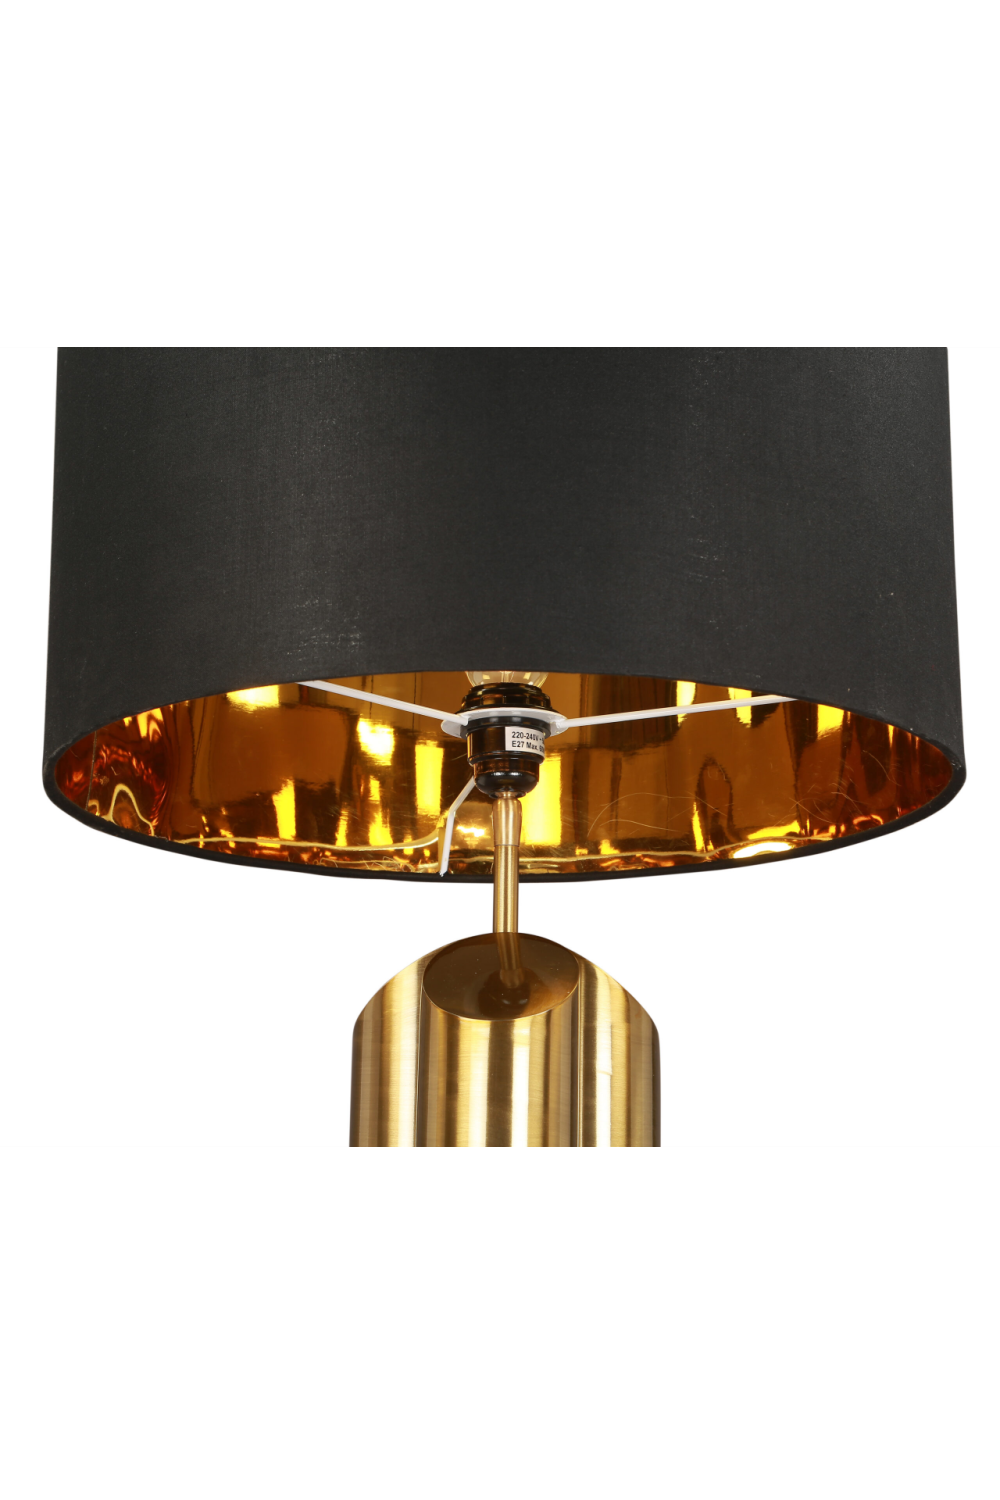 Brushed Brass Table Lamp | Liang & Eimil Obelisk | OROA.com